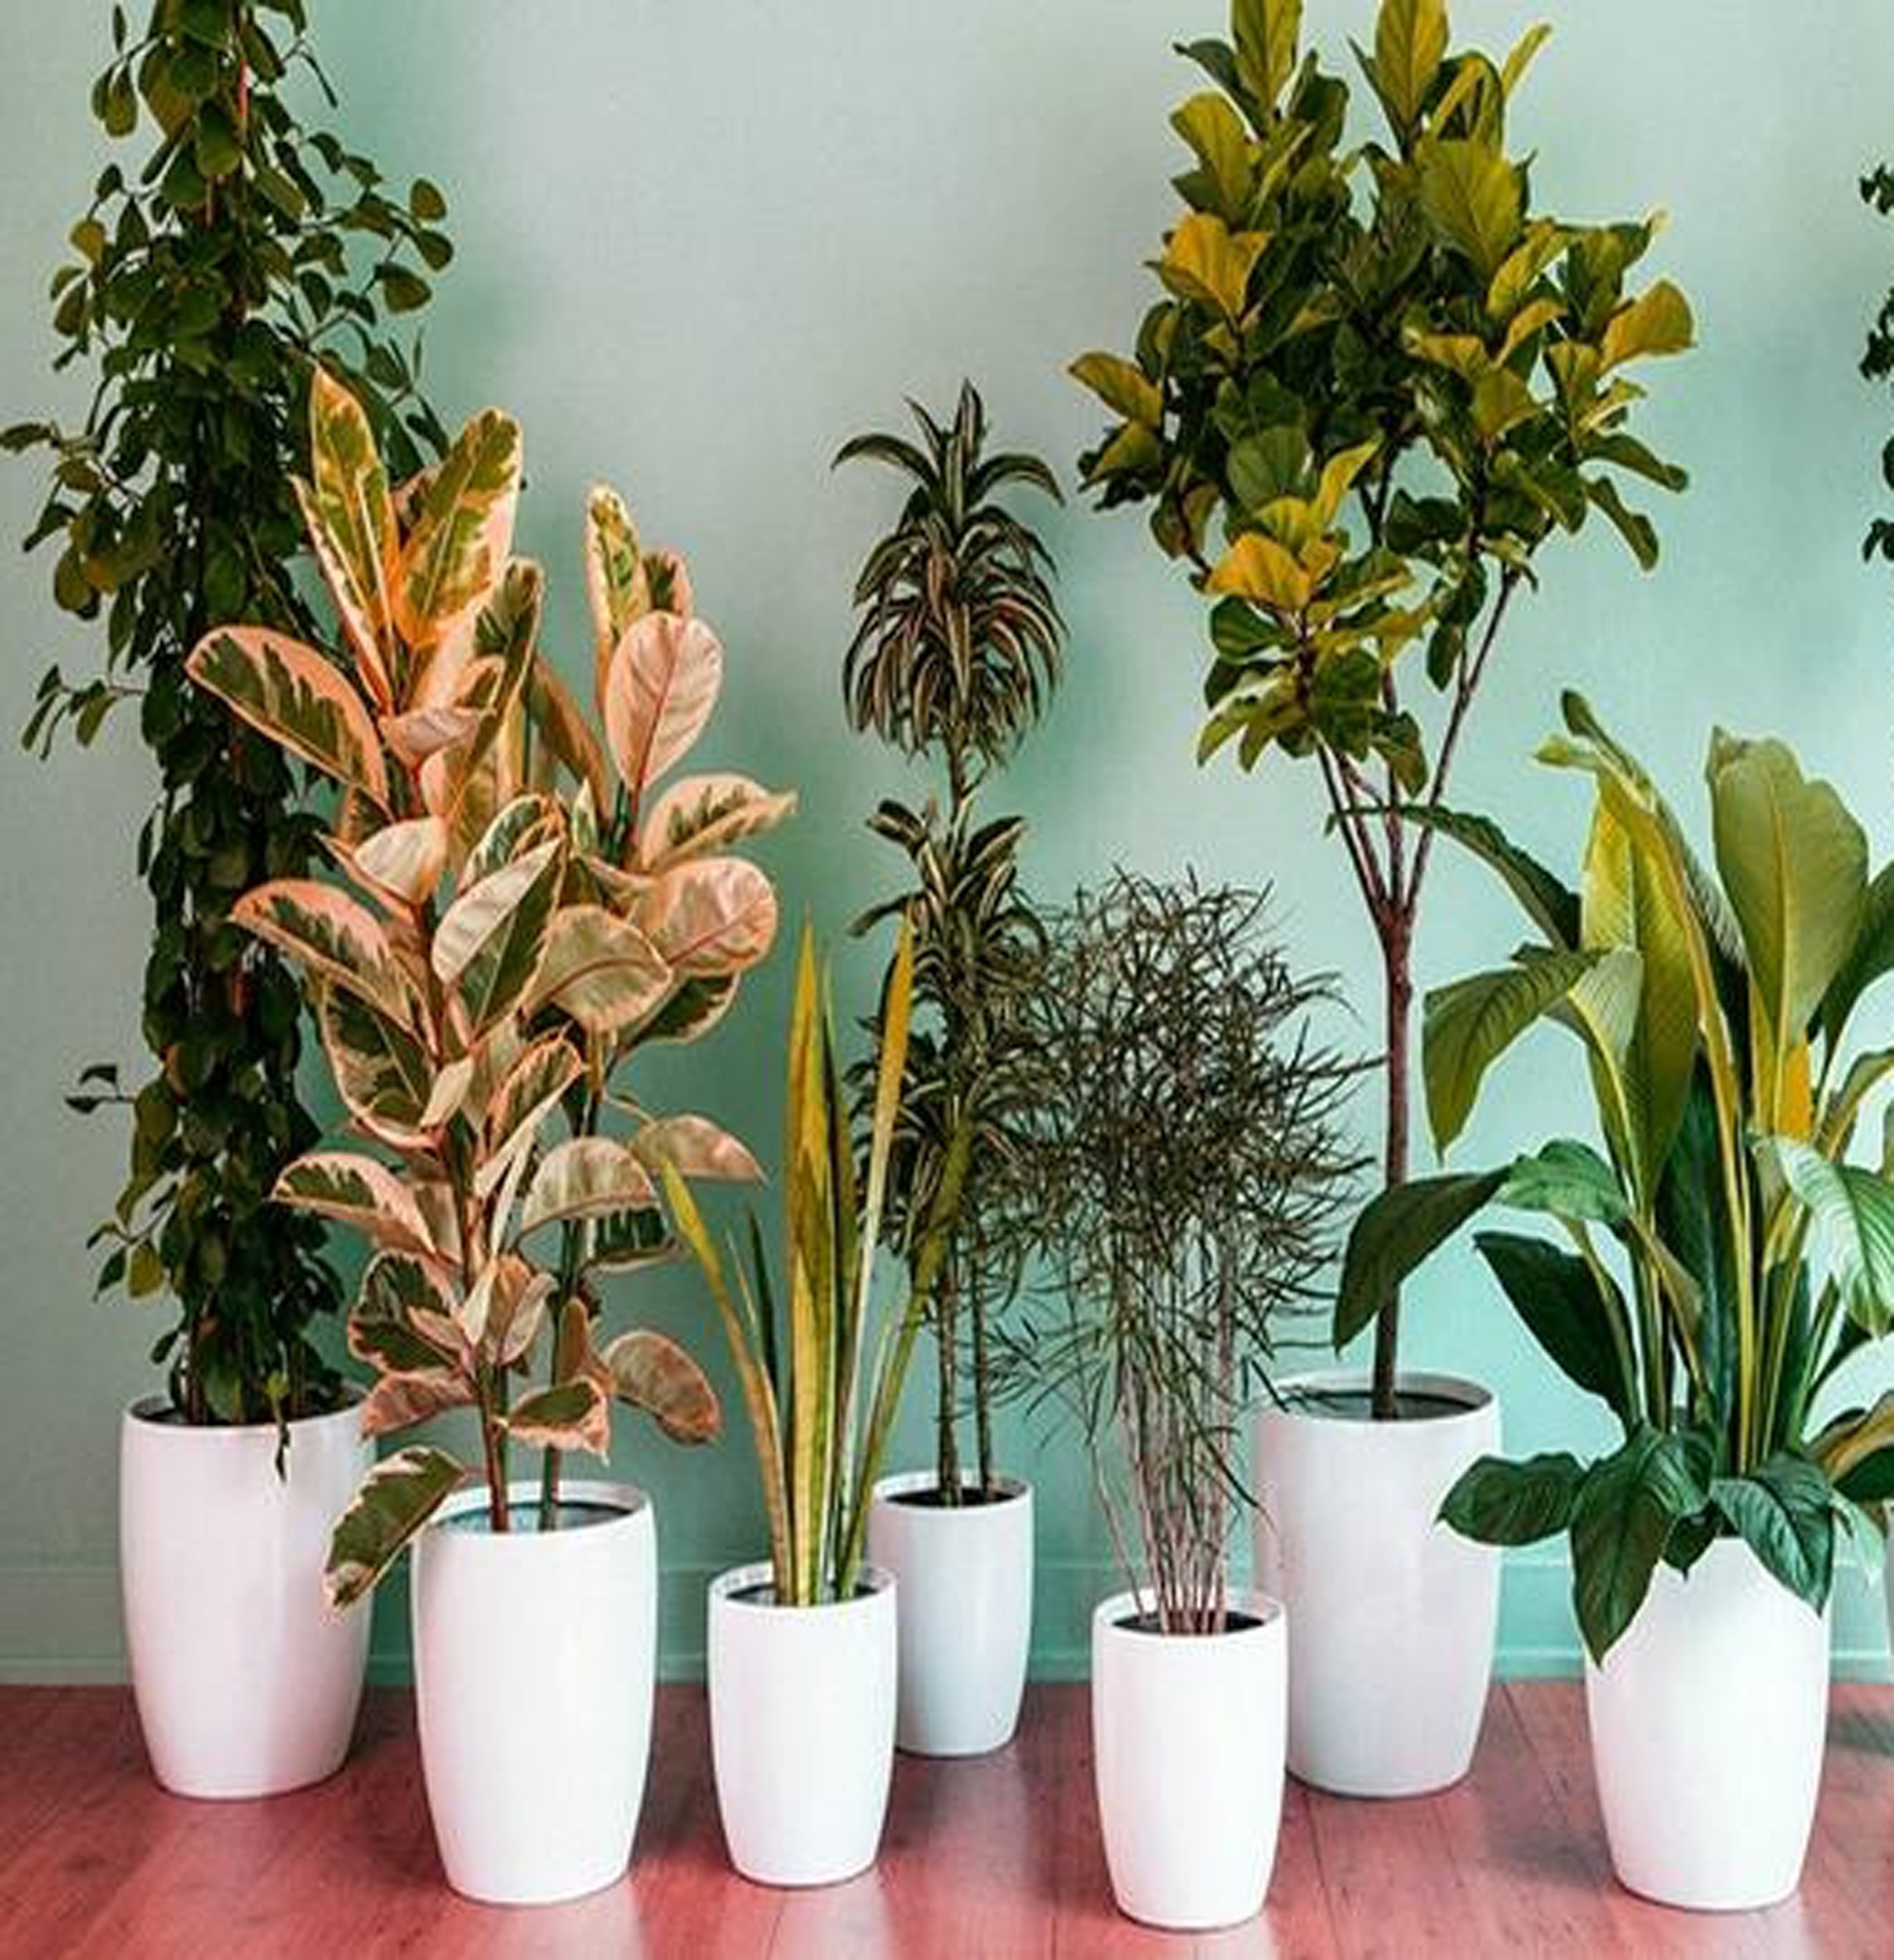 सात पौधे घर की हवा को बचाते हैं खतरनाक गैसों से